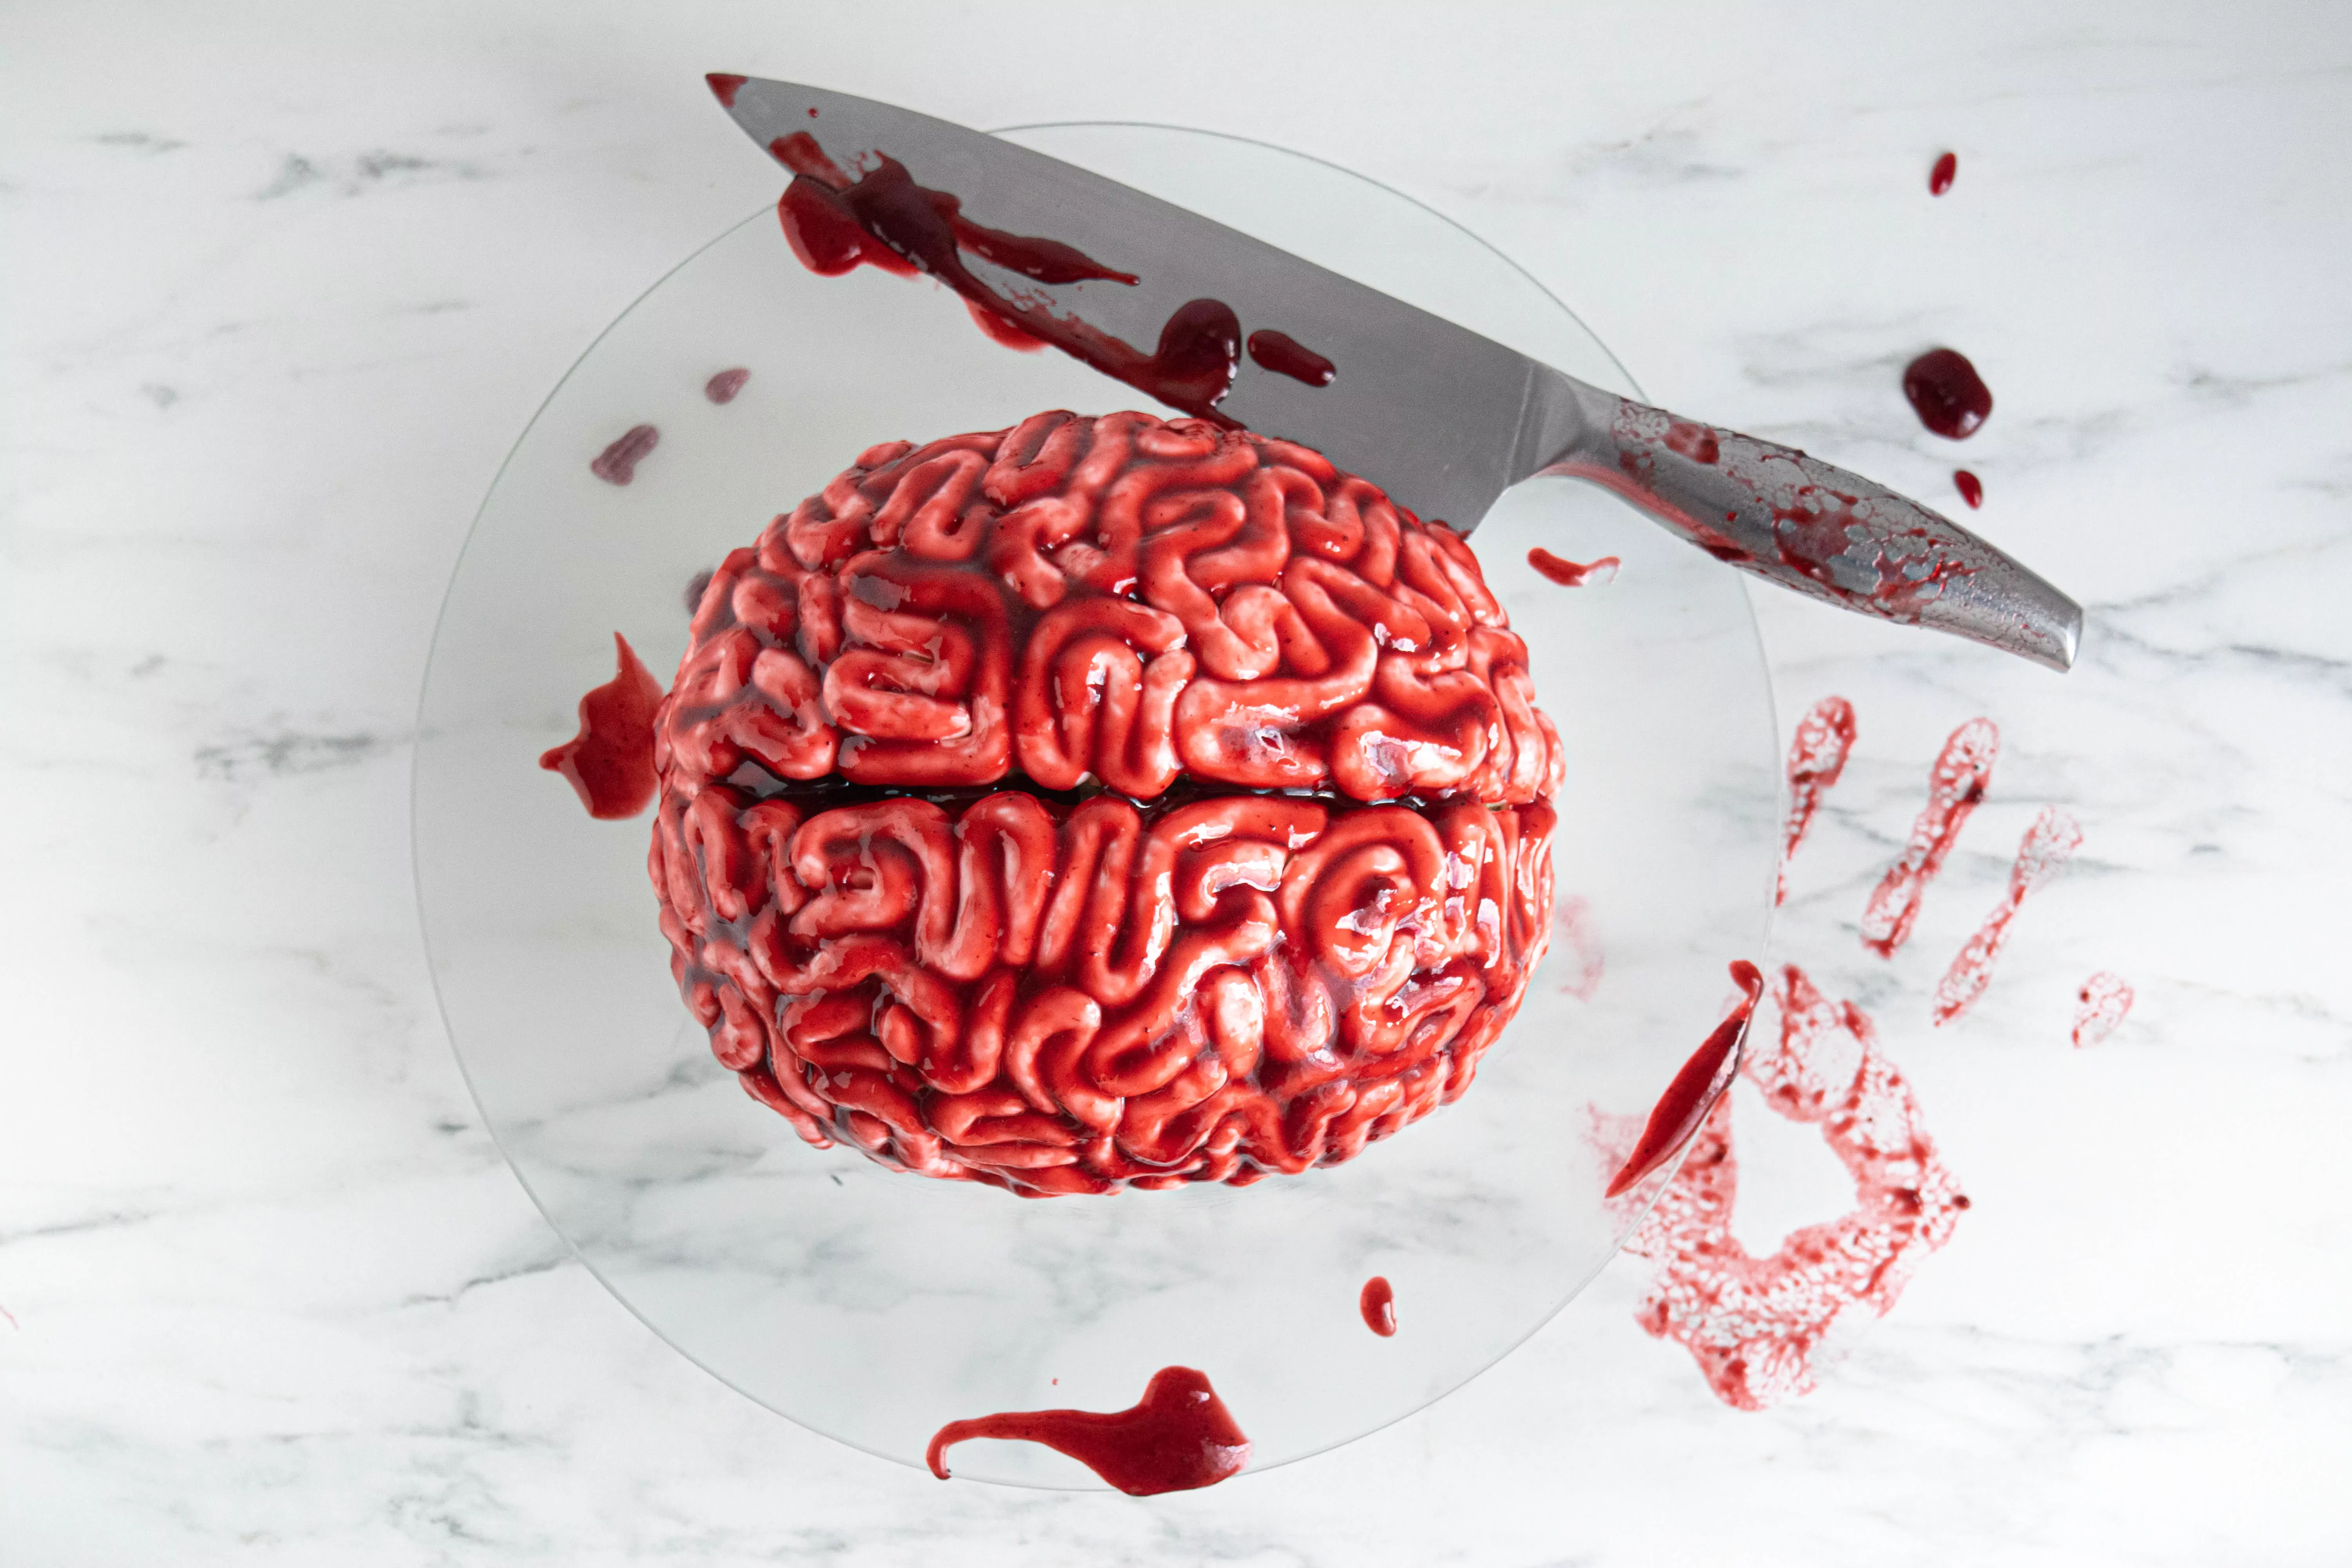 Moliūginis tortas helovynui - smegenys